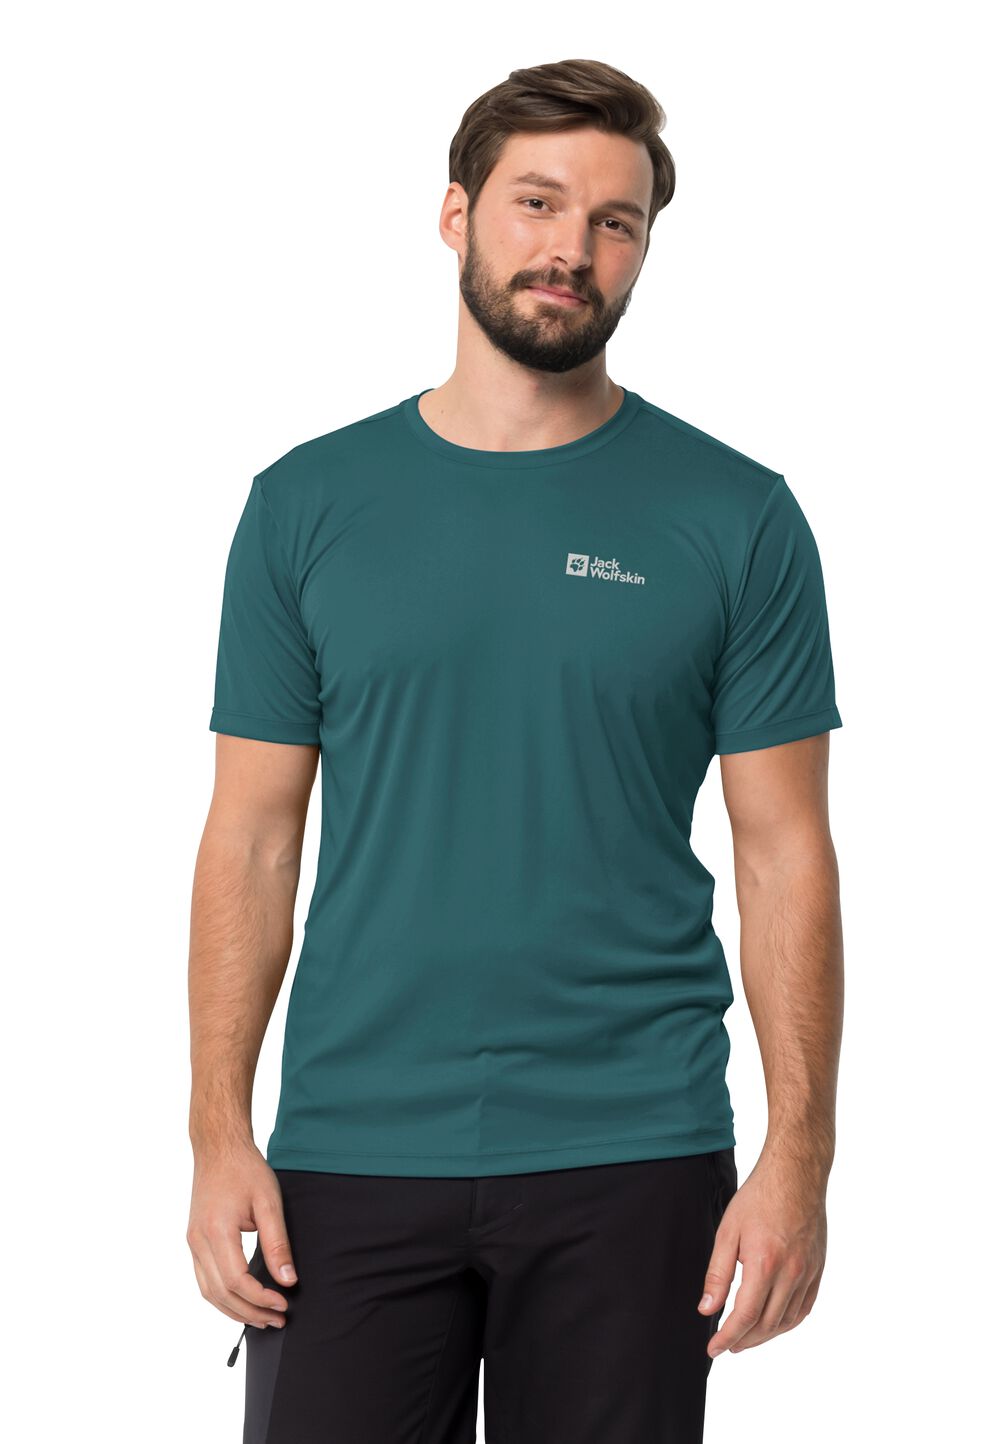 Jack Wolfskin Tech T-Shirt Men Functioneel shirt Heren M emerald